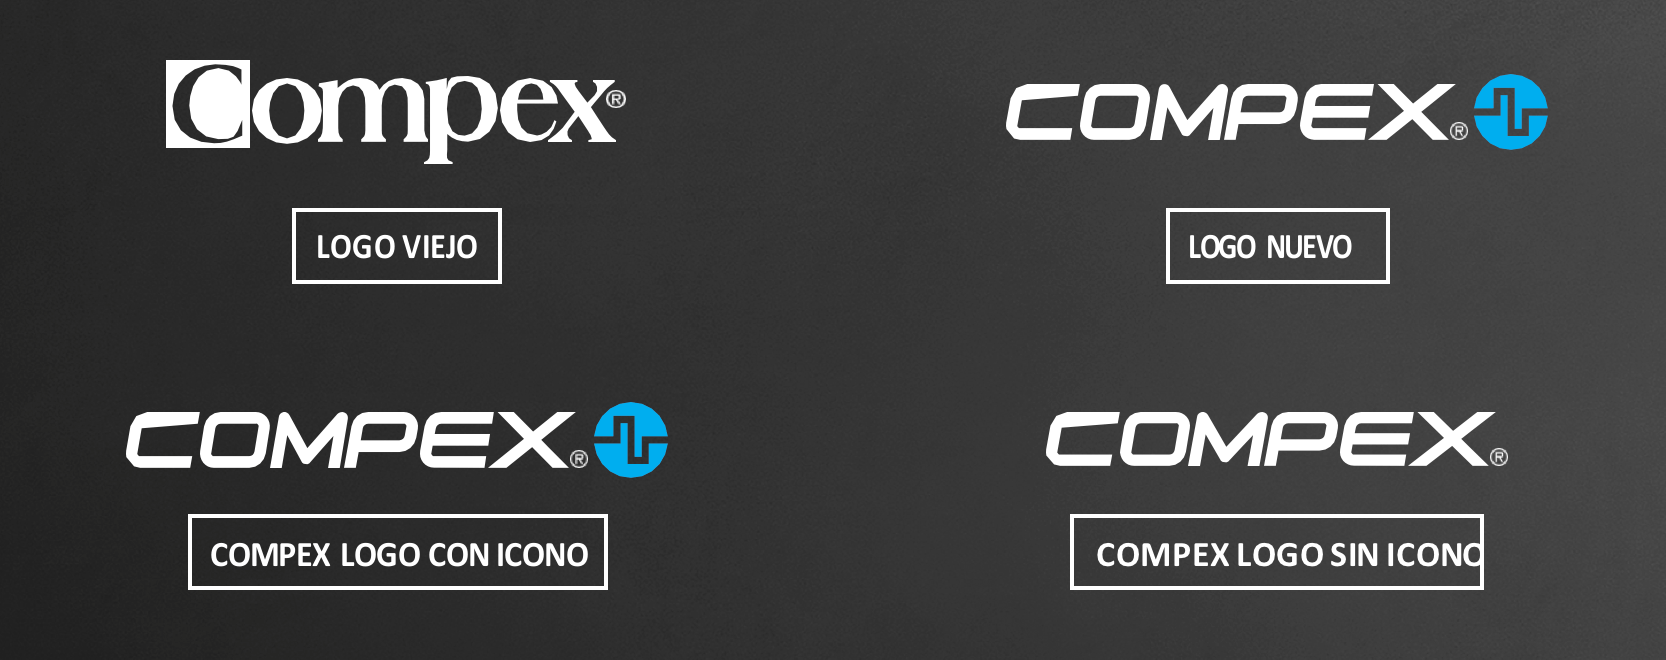 Alterações no logotipo Compex